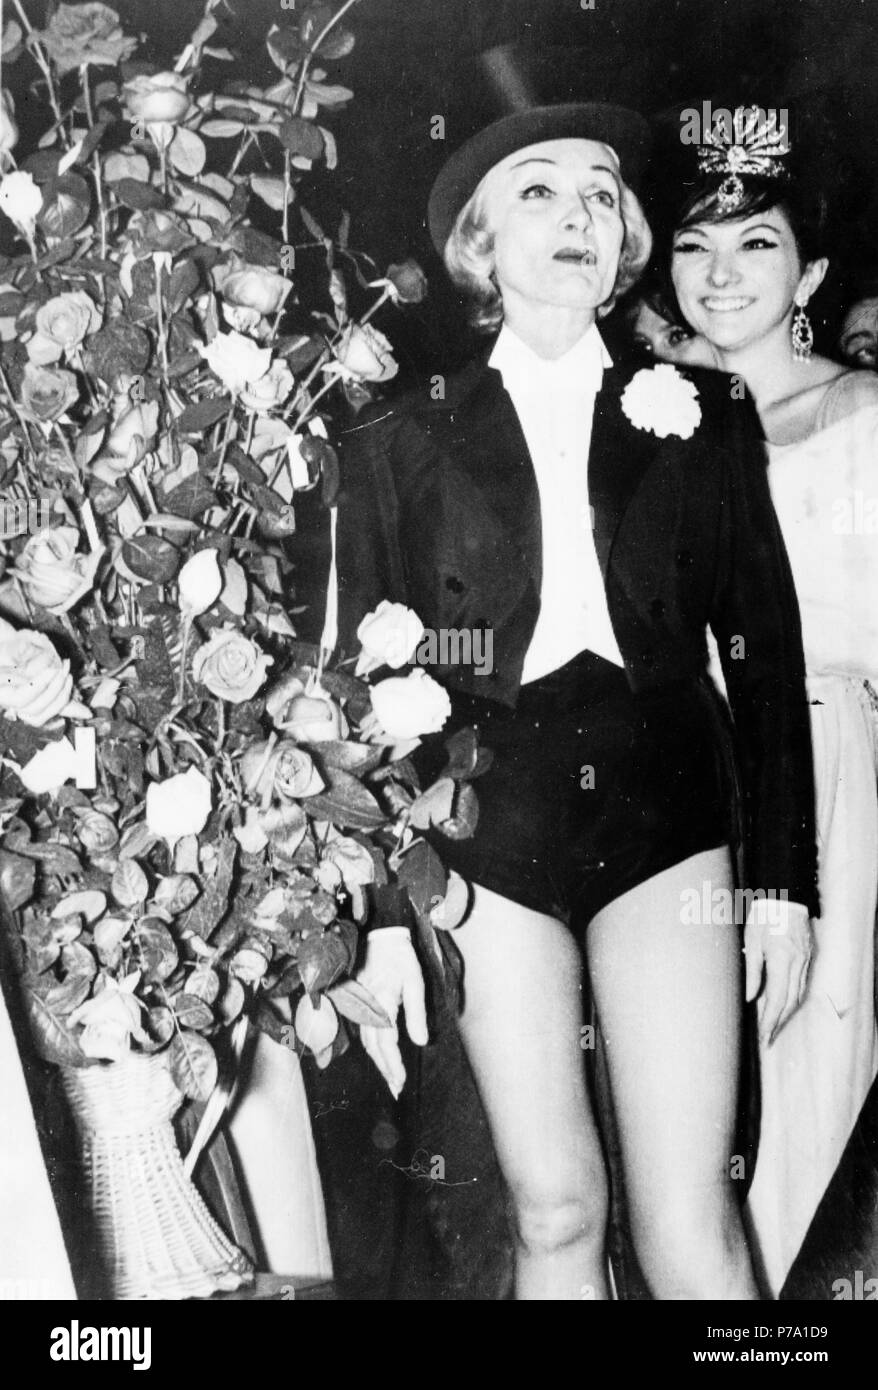 marlene dietrich, olympia, paris 60s Stock Photo - Alamy